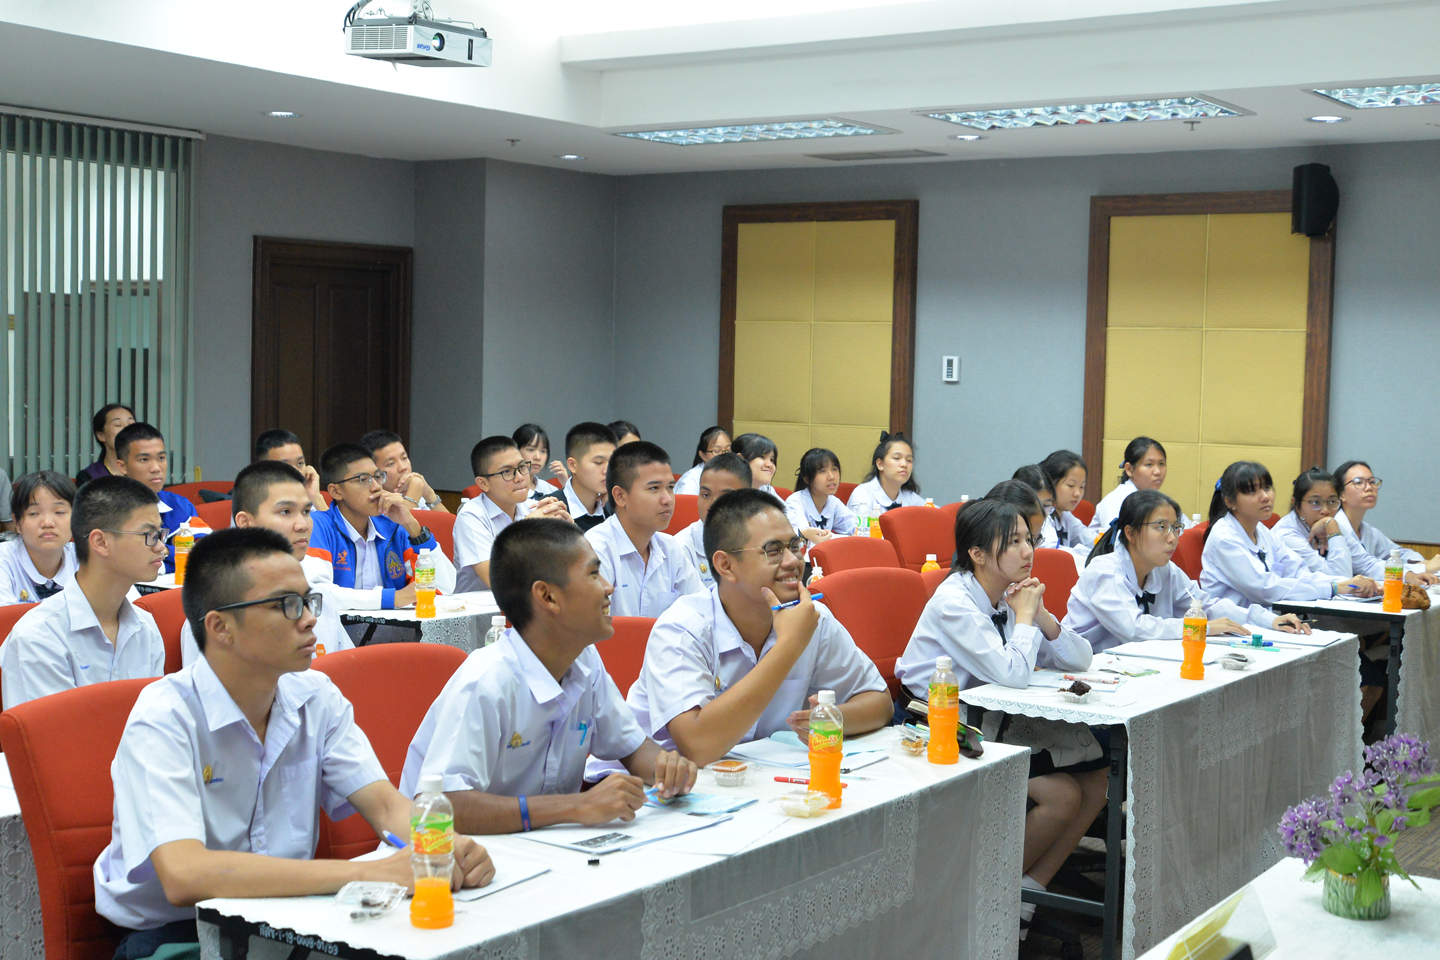 โรงเรียนวิทยาศาสตร์จุฬาภรณราชวิทยาลัย ชลบุรี ศึกษาดูงาน